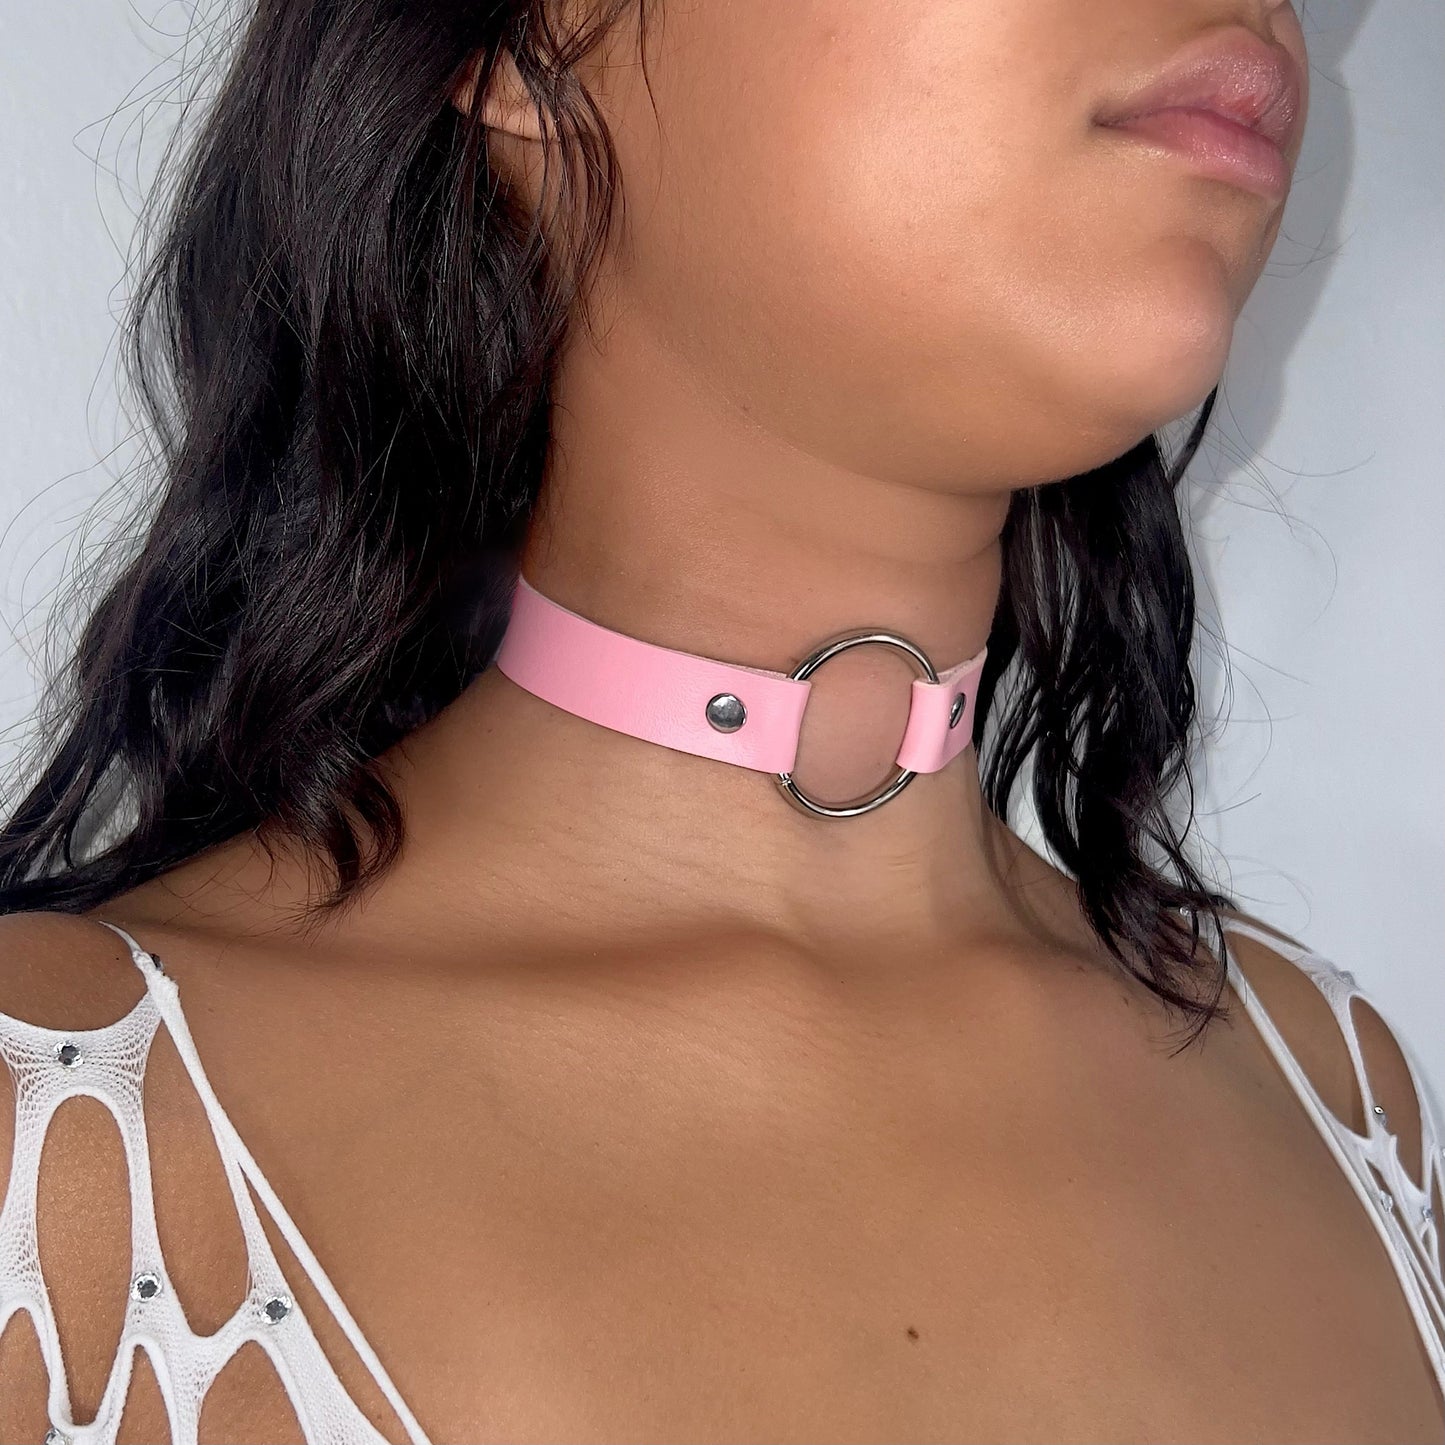 O-Ring Collar: Pink